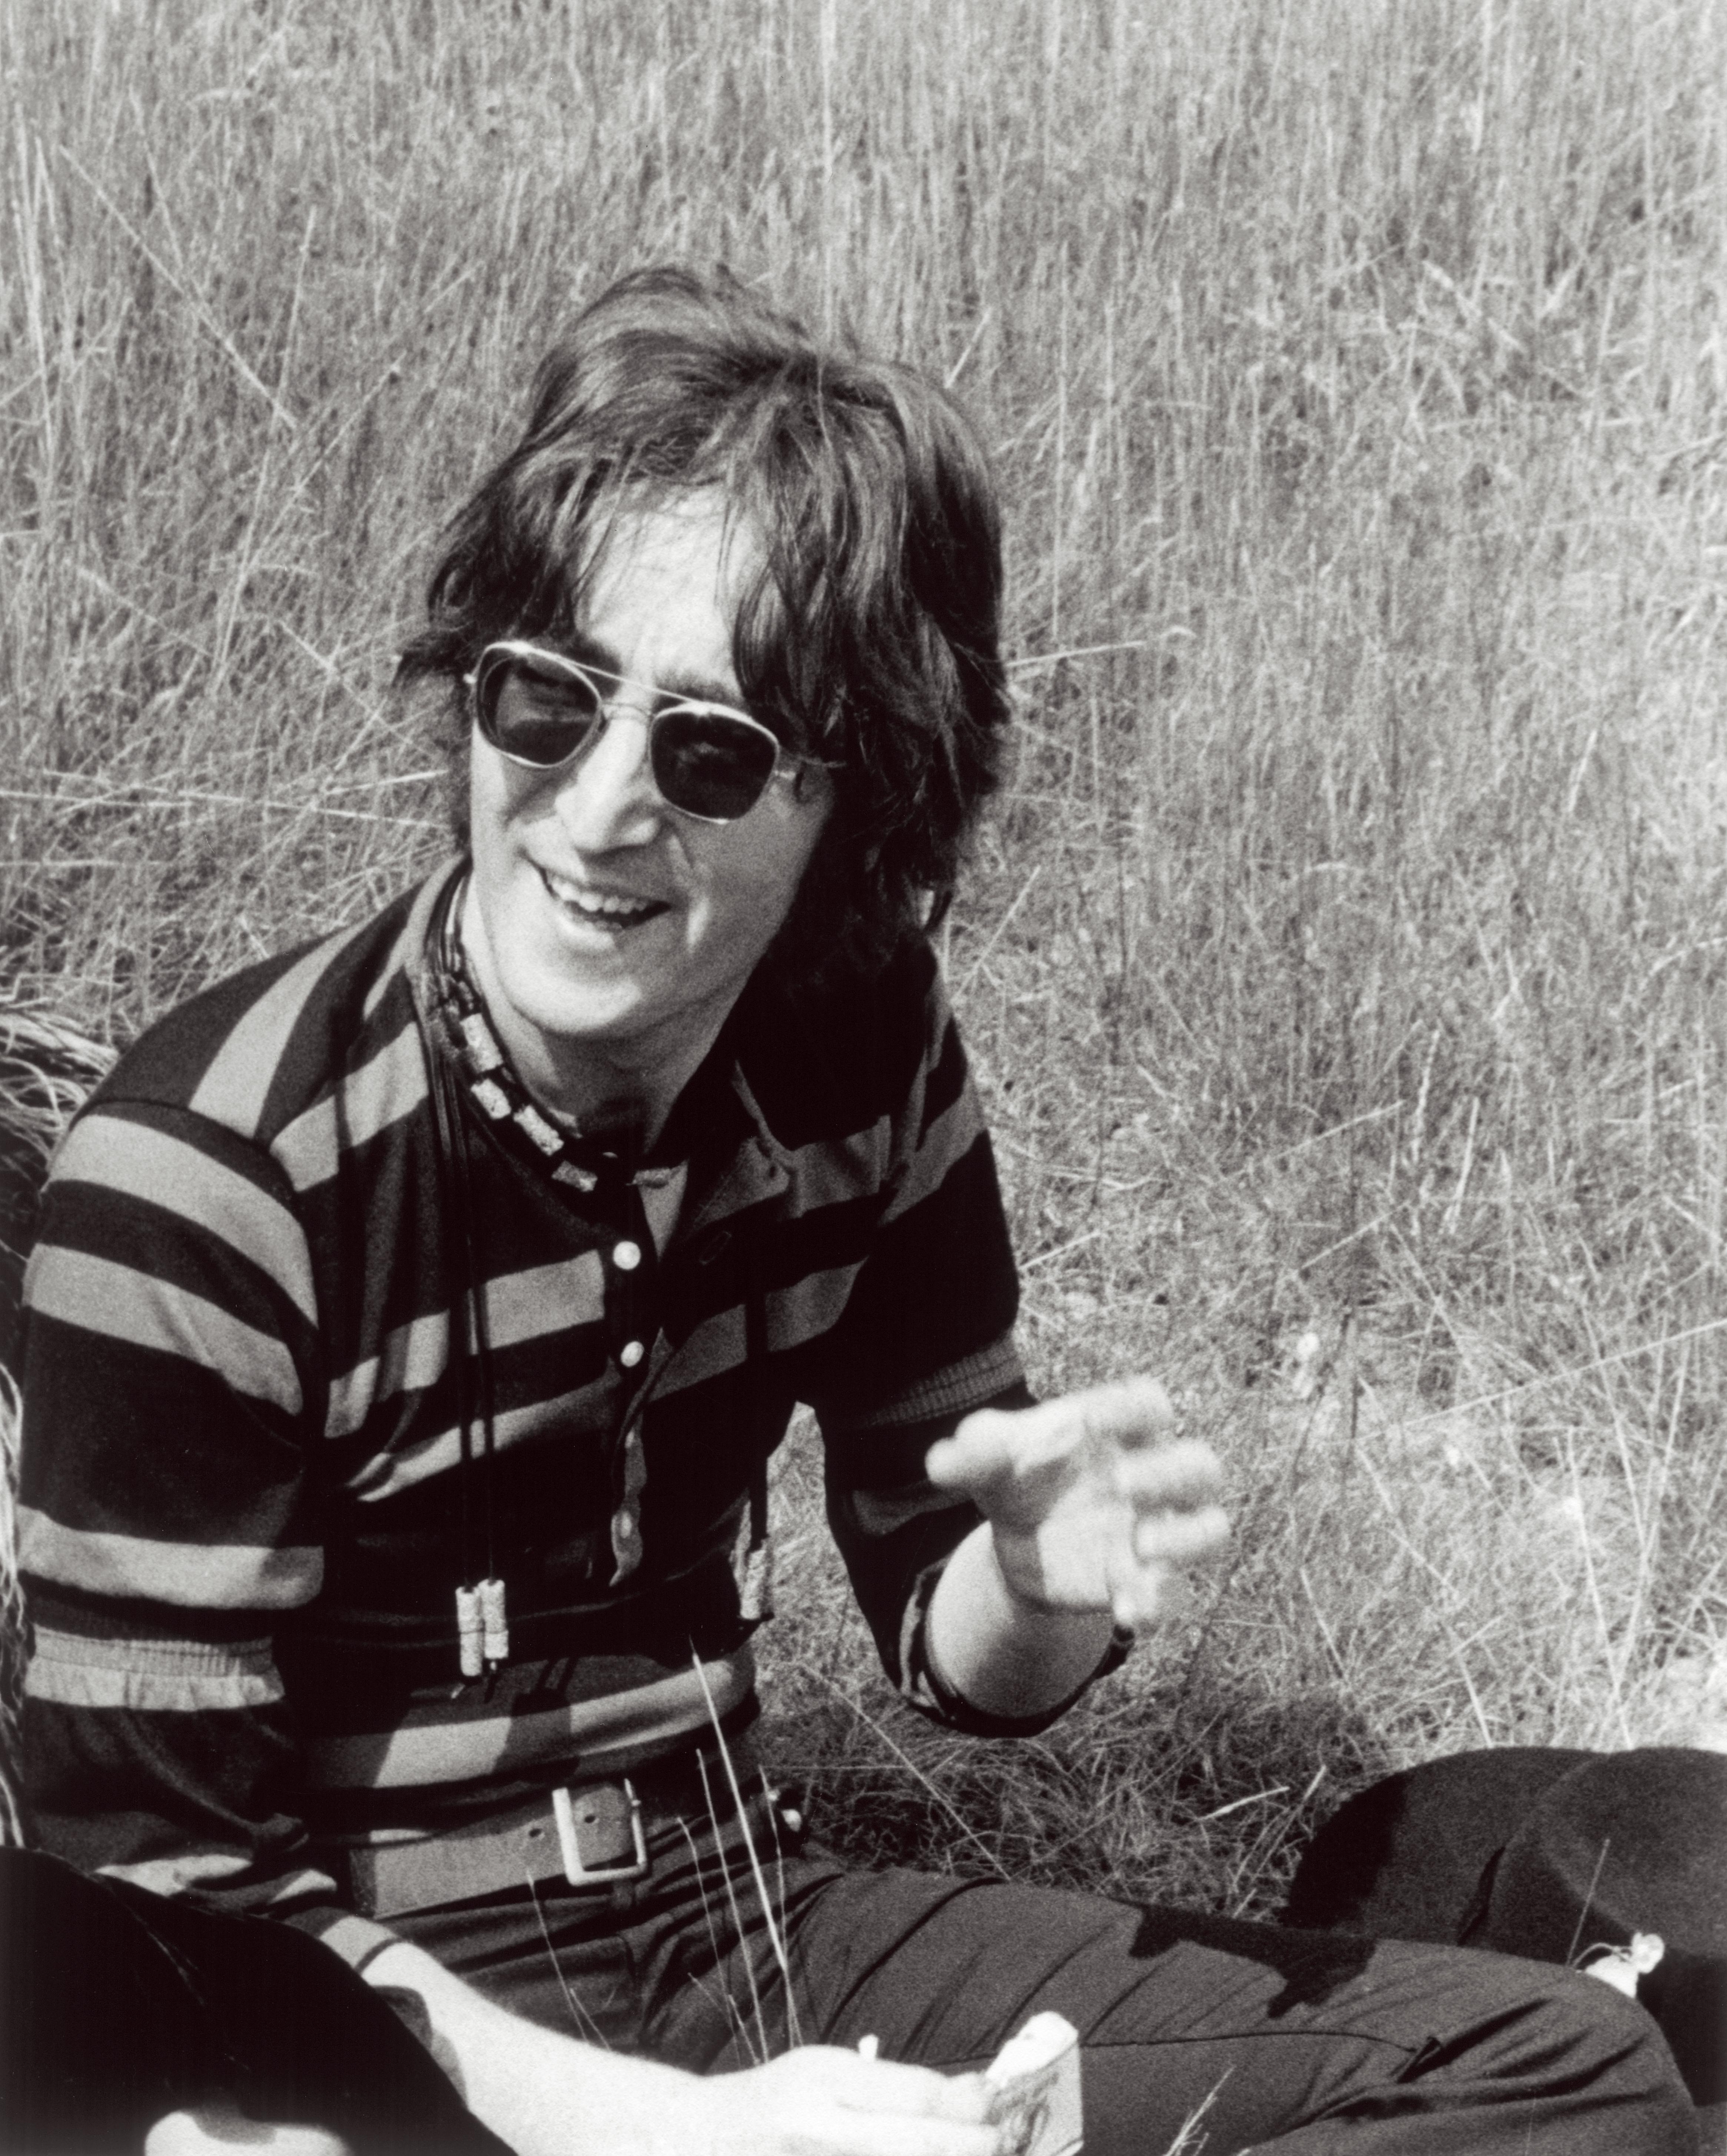 John Lennon Backgrounds, Compatible - PC, Mobile, Gadgets| 4661x5818 px